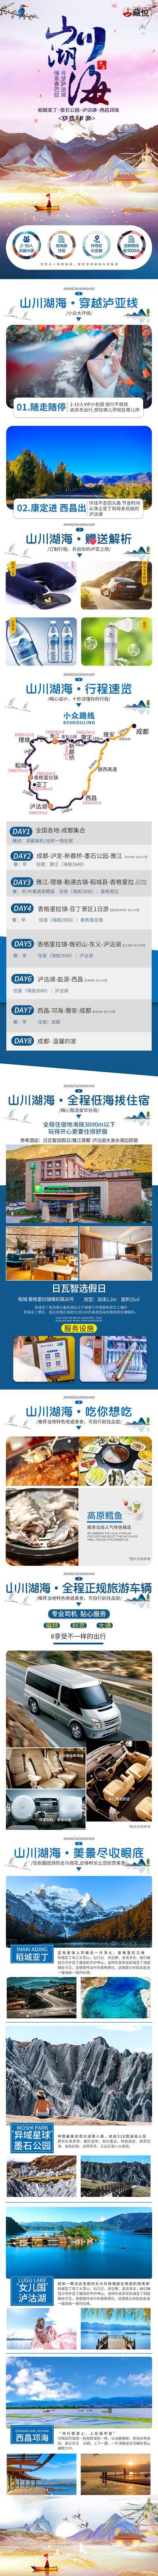 南门网 广告 海报 长图 旅游 美食 中式 山水 美景 车 酒店 泸亚